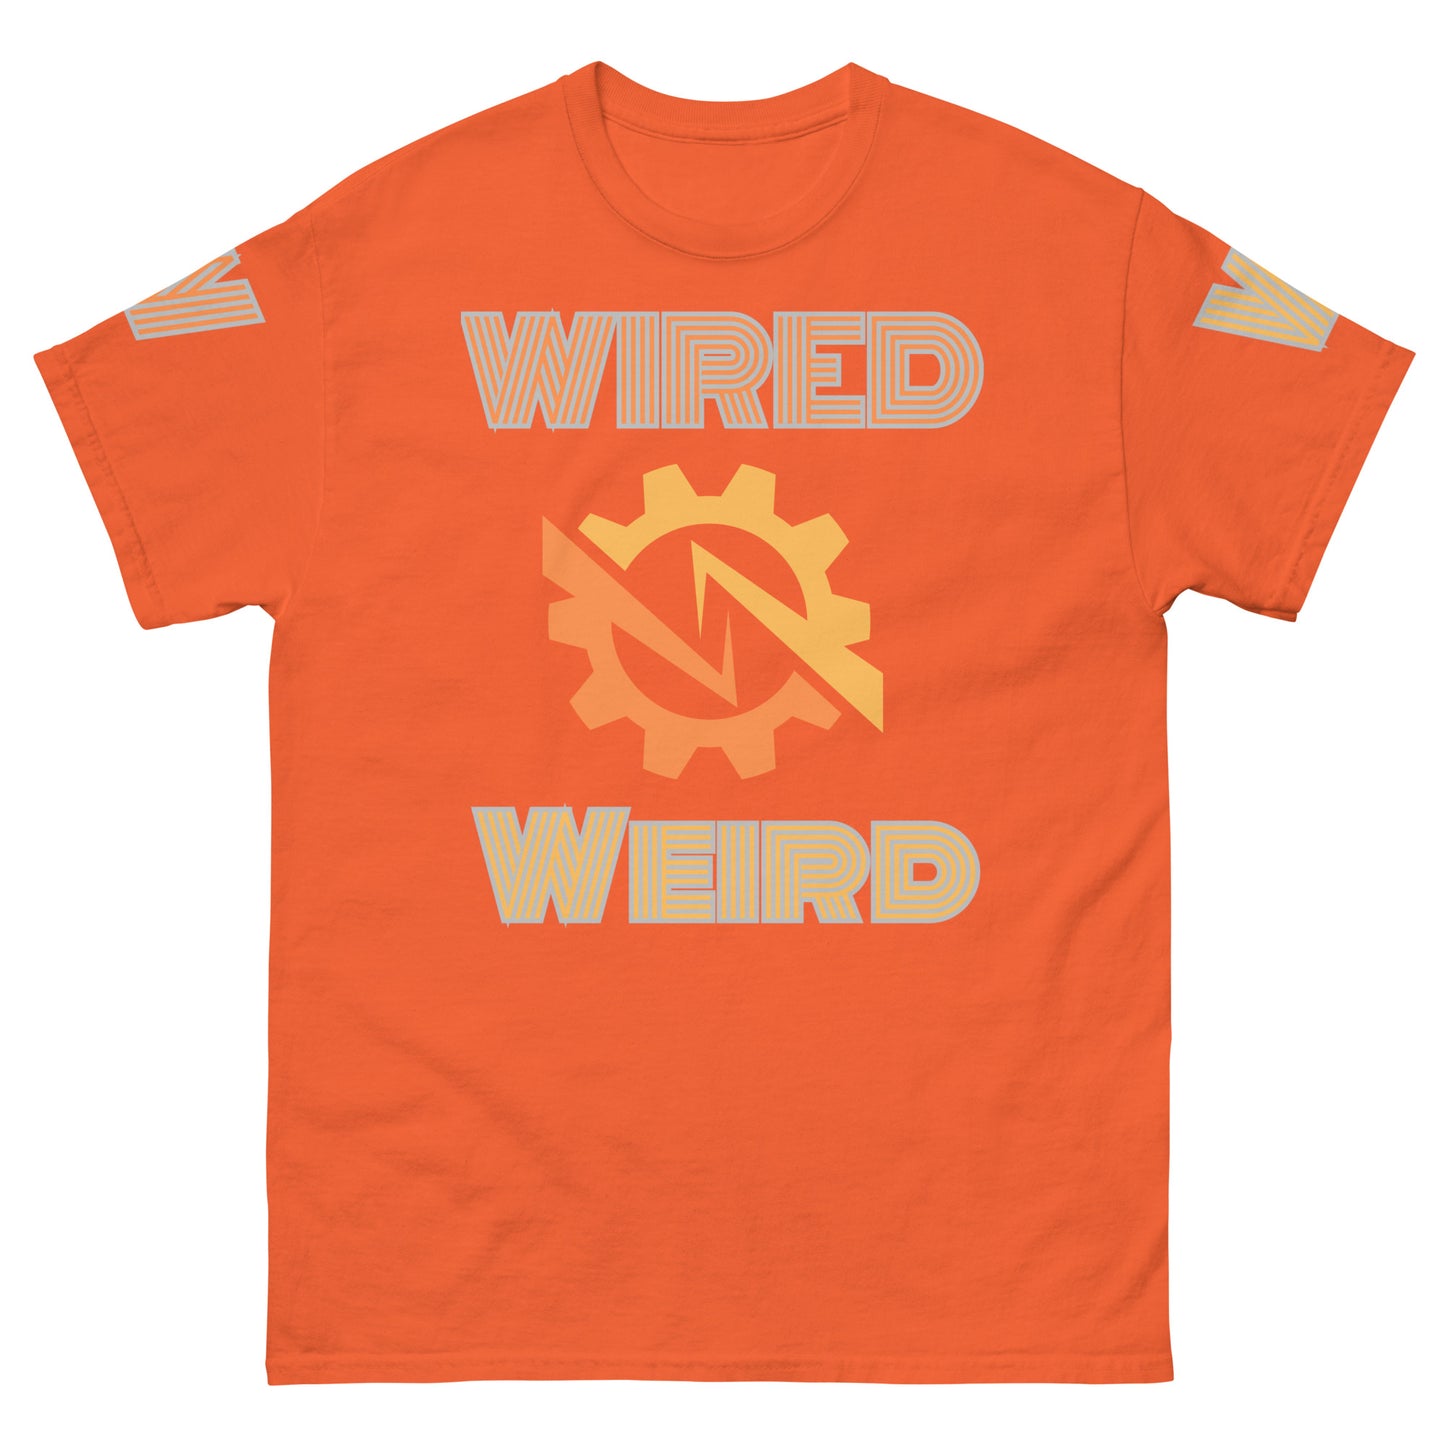 Wired Weird PJ Orange Unisex classic tee